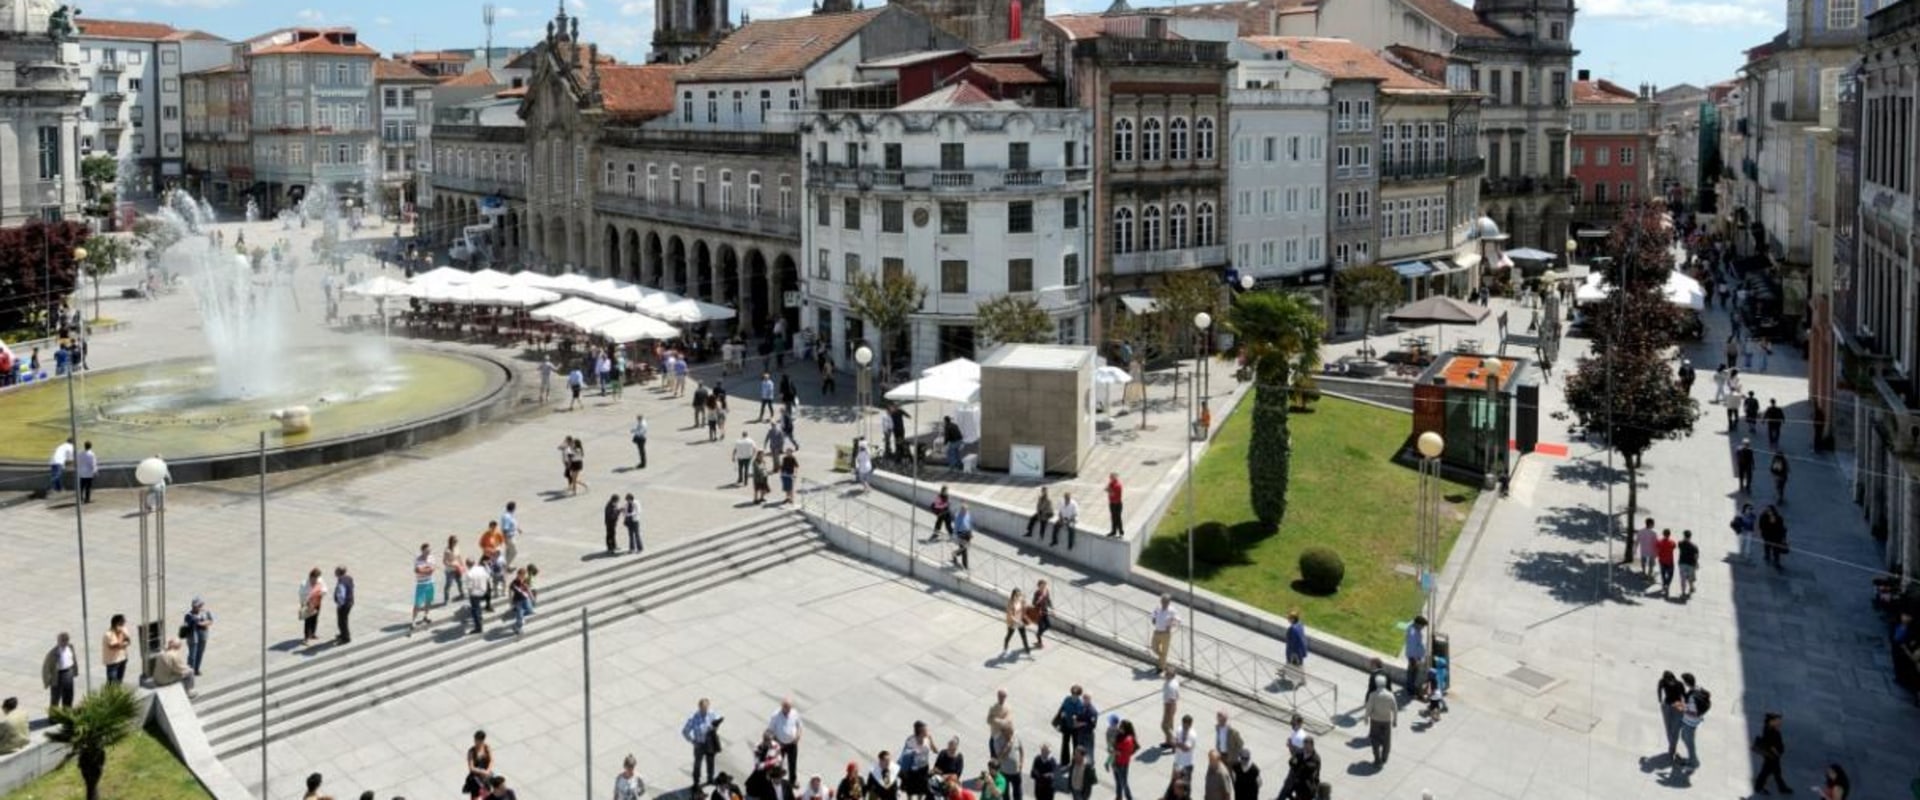 Explorando as práticas e crenças religiosas únicas em Braga, Portugal